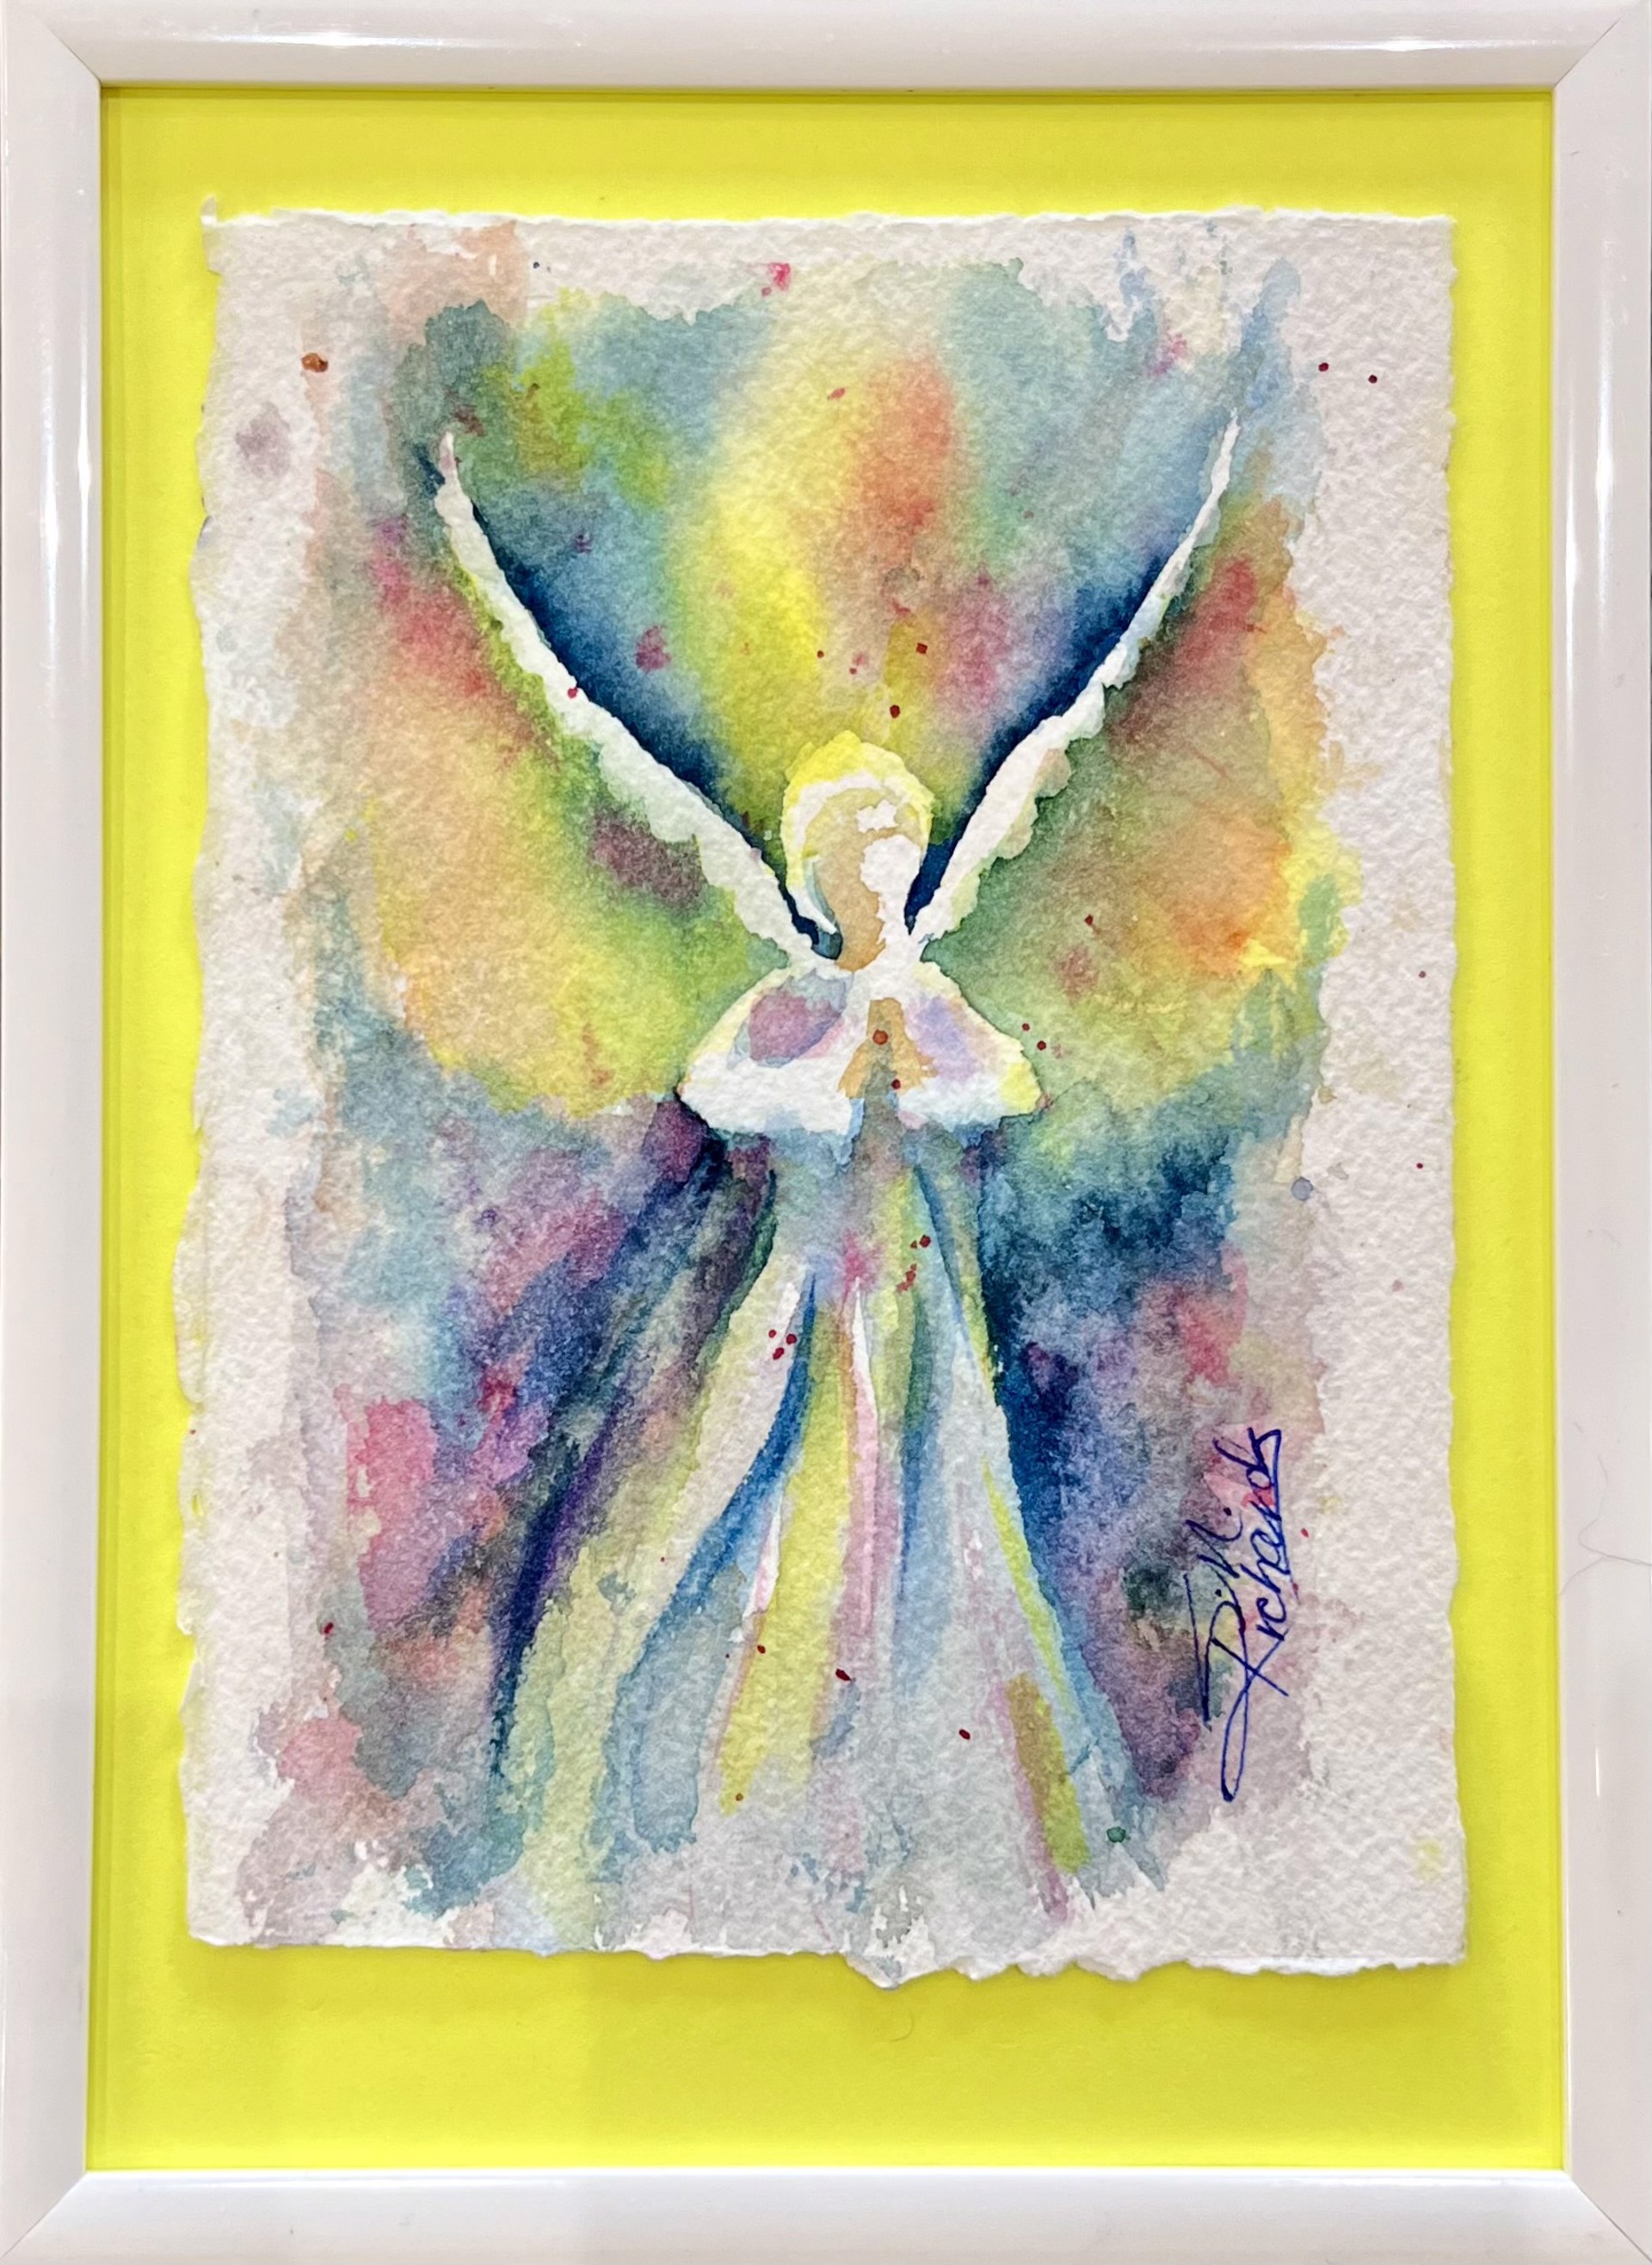 Angel Brilliant by Shawn Richards